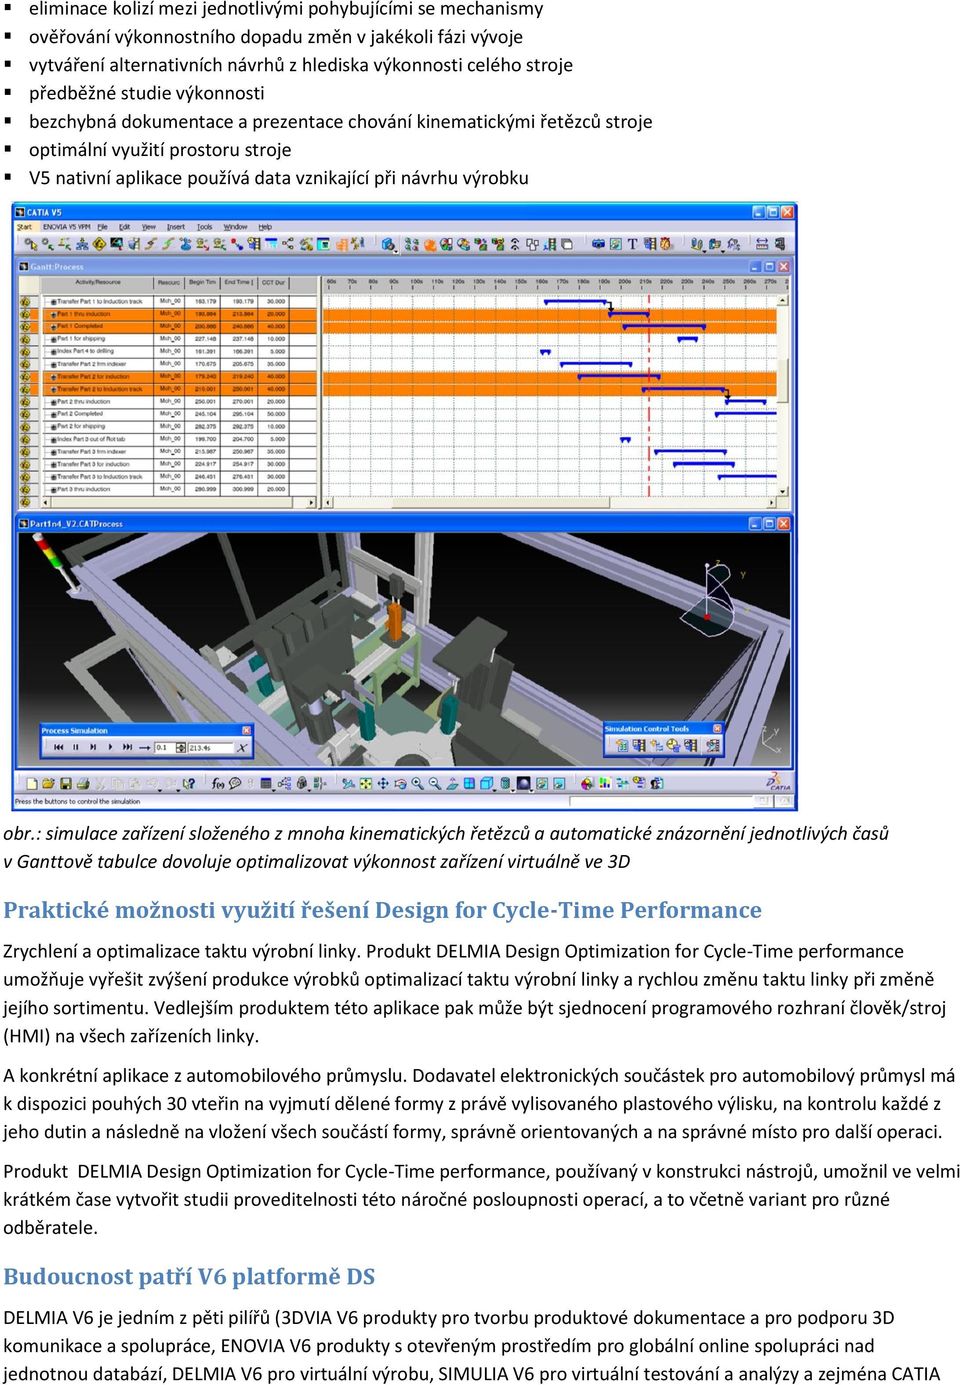 : simulace zařízení složeného z mnoha kinematických řetězců a automatické znázornění jednotlivých časů v Ganttově tabulce dovoluje optimalizovat výkonnost zařízení virtuálně ve 3D Praktické možnosti